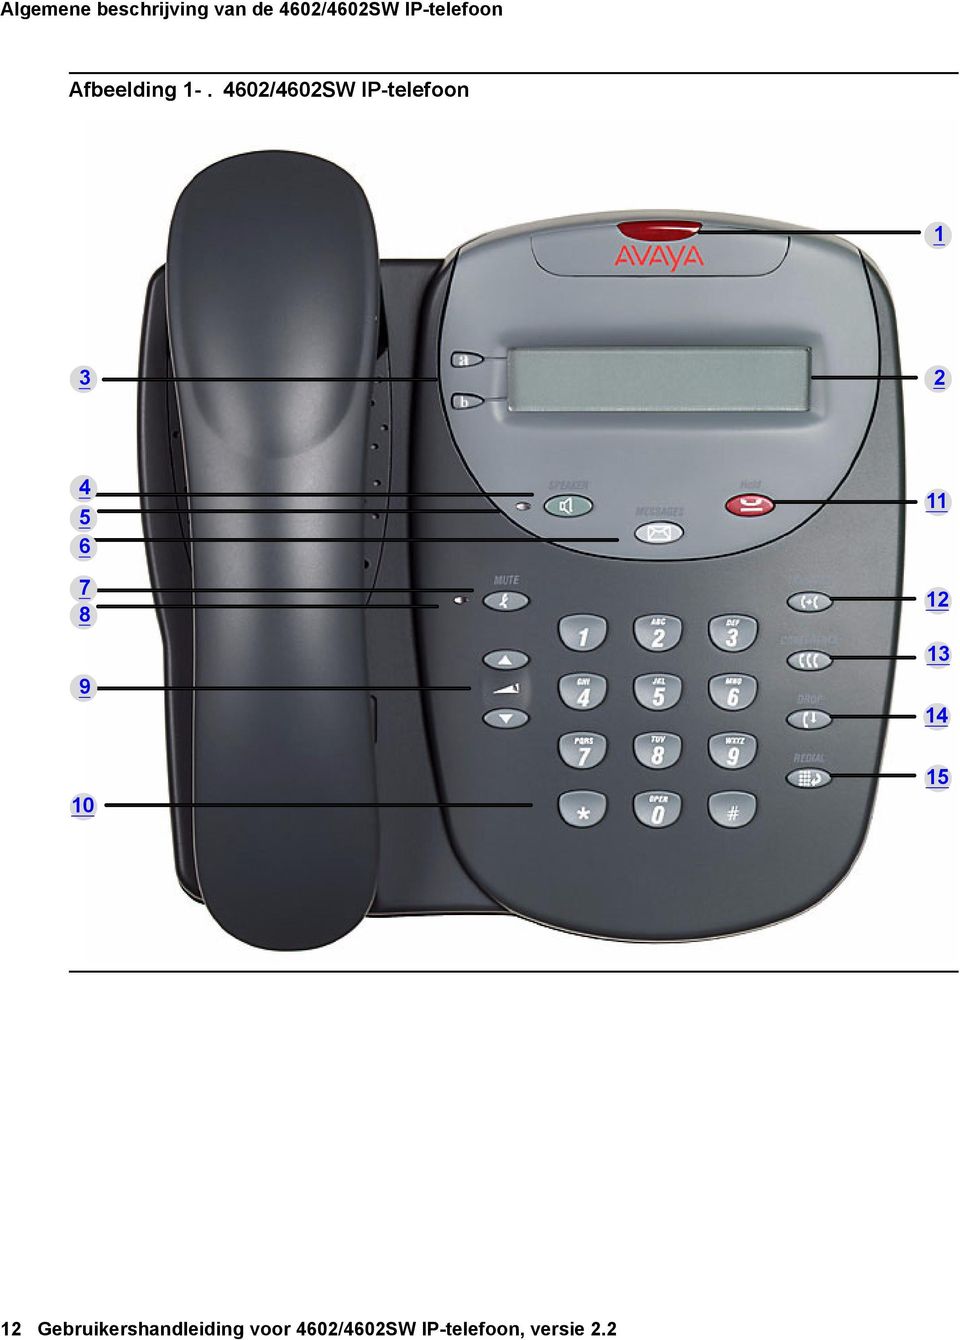 4602/4602SW IP-telefoon 1 3 2 4 5 6 7 8 9 11 12